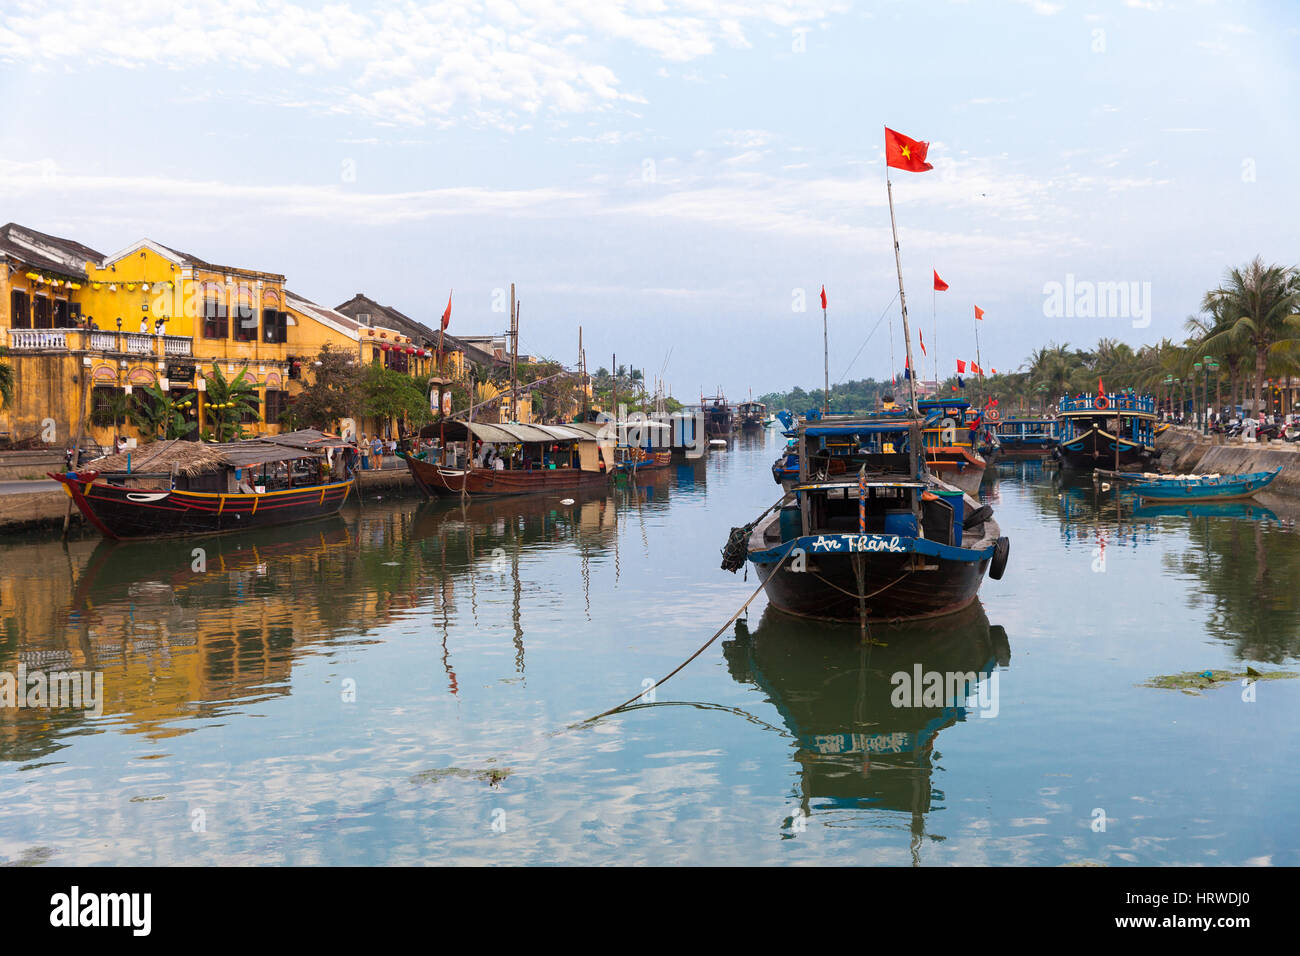 Hoi An, Vietnam, 16 mars 2014 : La rivière de l'ancienne ville de Hoi An, classé au Patrimoine Mondial de l'UNESCO, au Vietnam. Banque D'Images